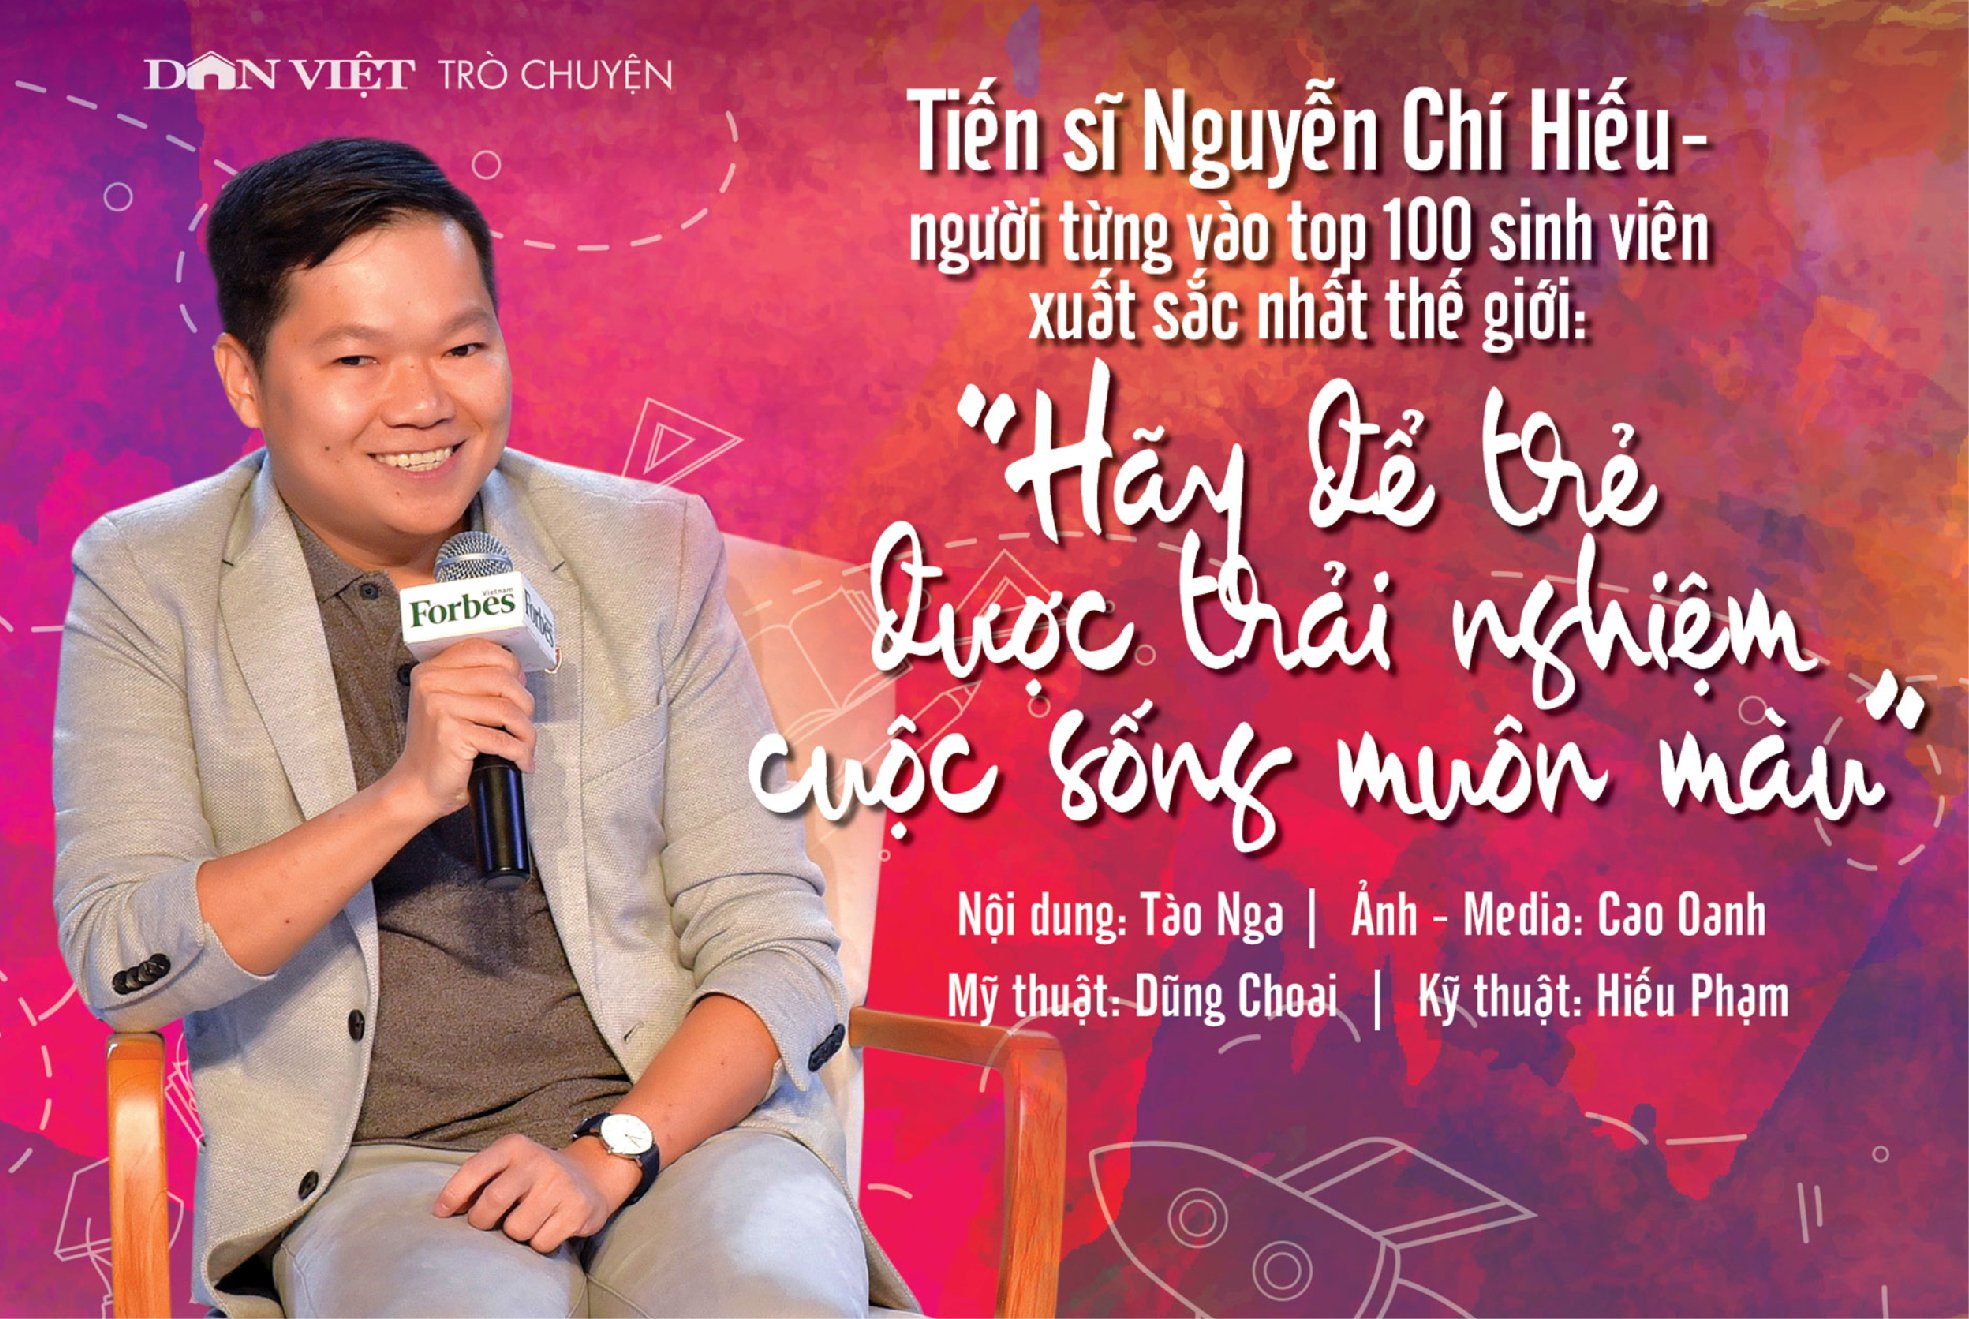 [Dân Việt] TS Nguyễn Chí Hiếu: "Hãy để trẻ được trải nghiệm cuộc sống muôn màu"